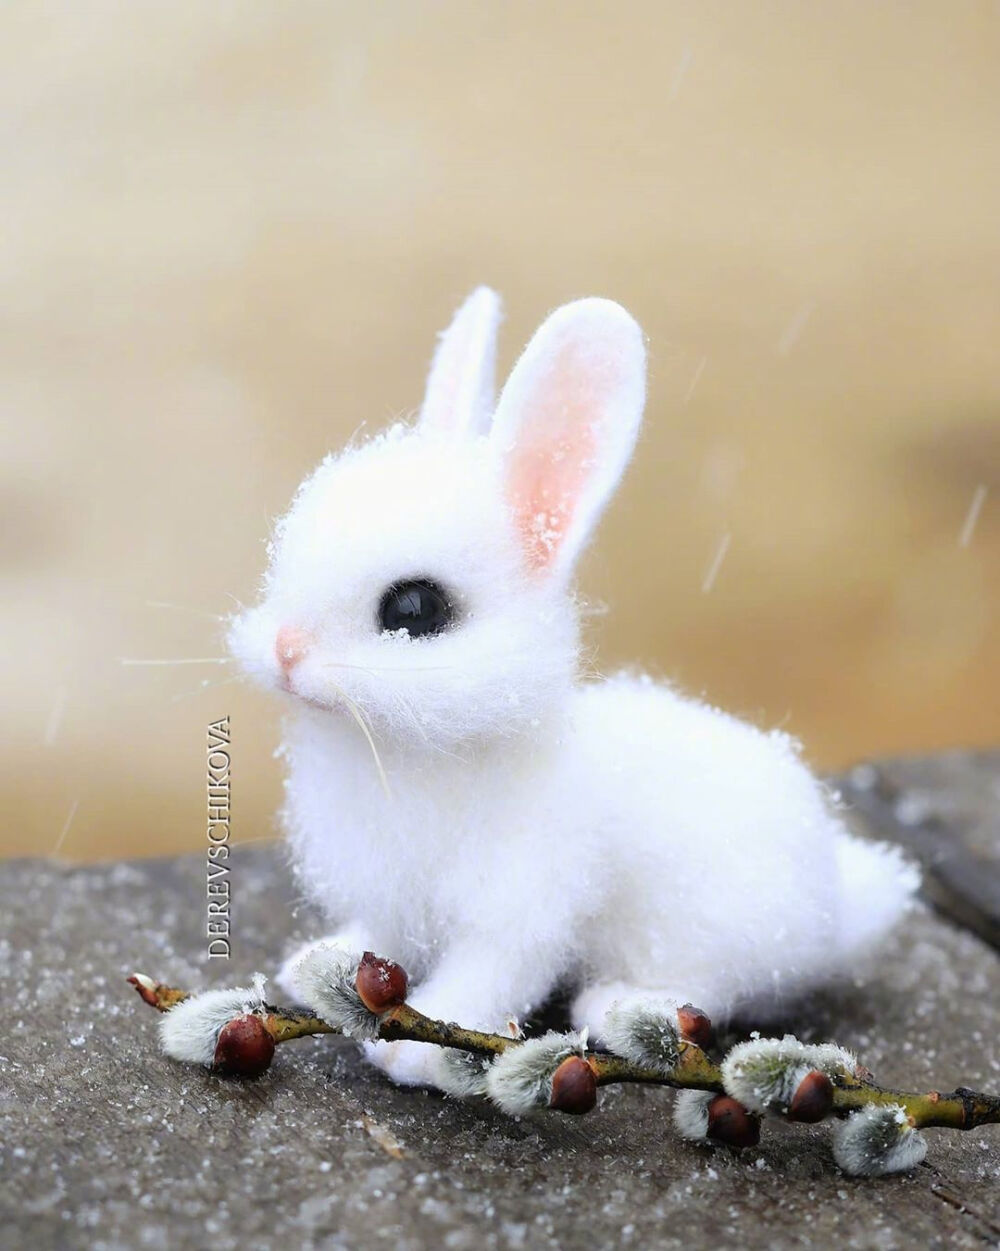 小兔子,白又白,两只耳朵竖起来. - 堆糖,美图壁纸兴趣